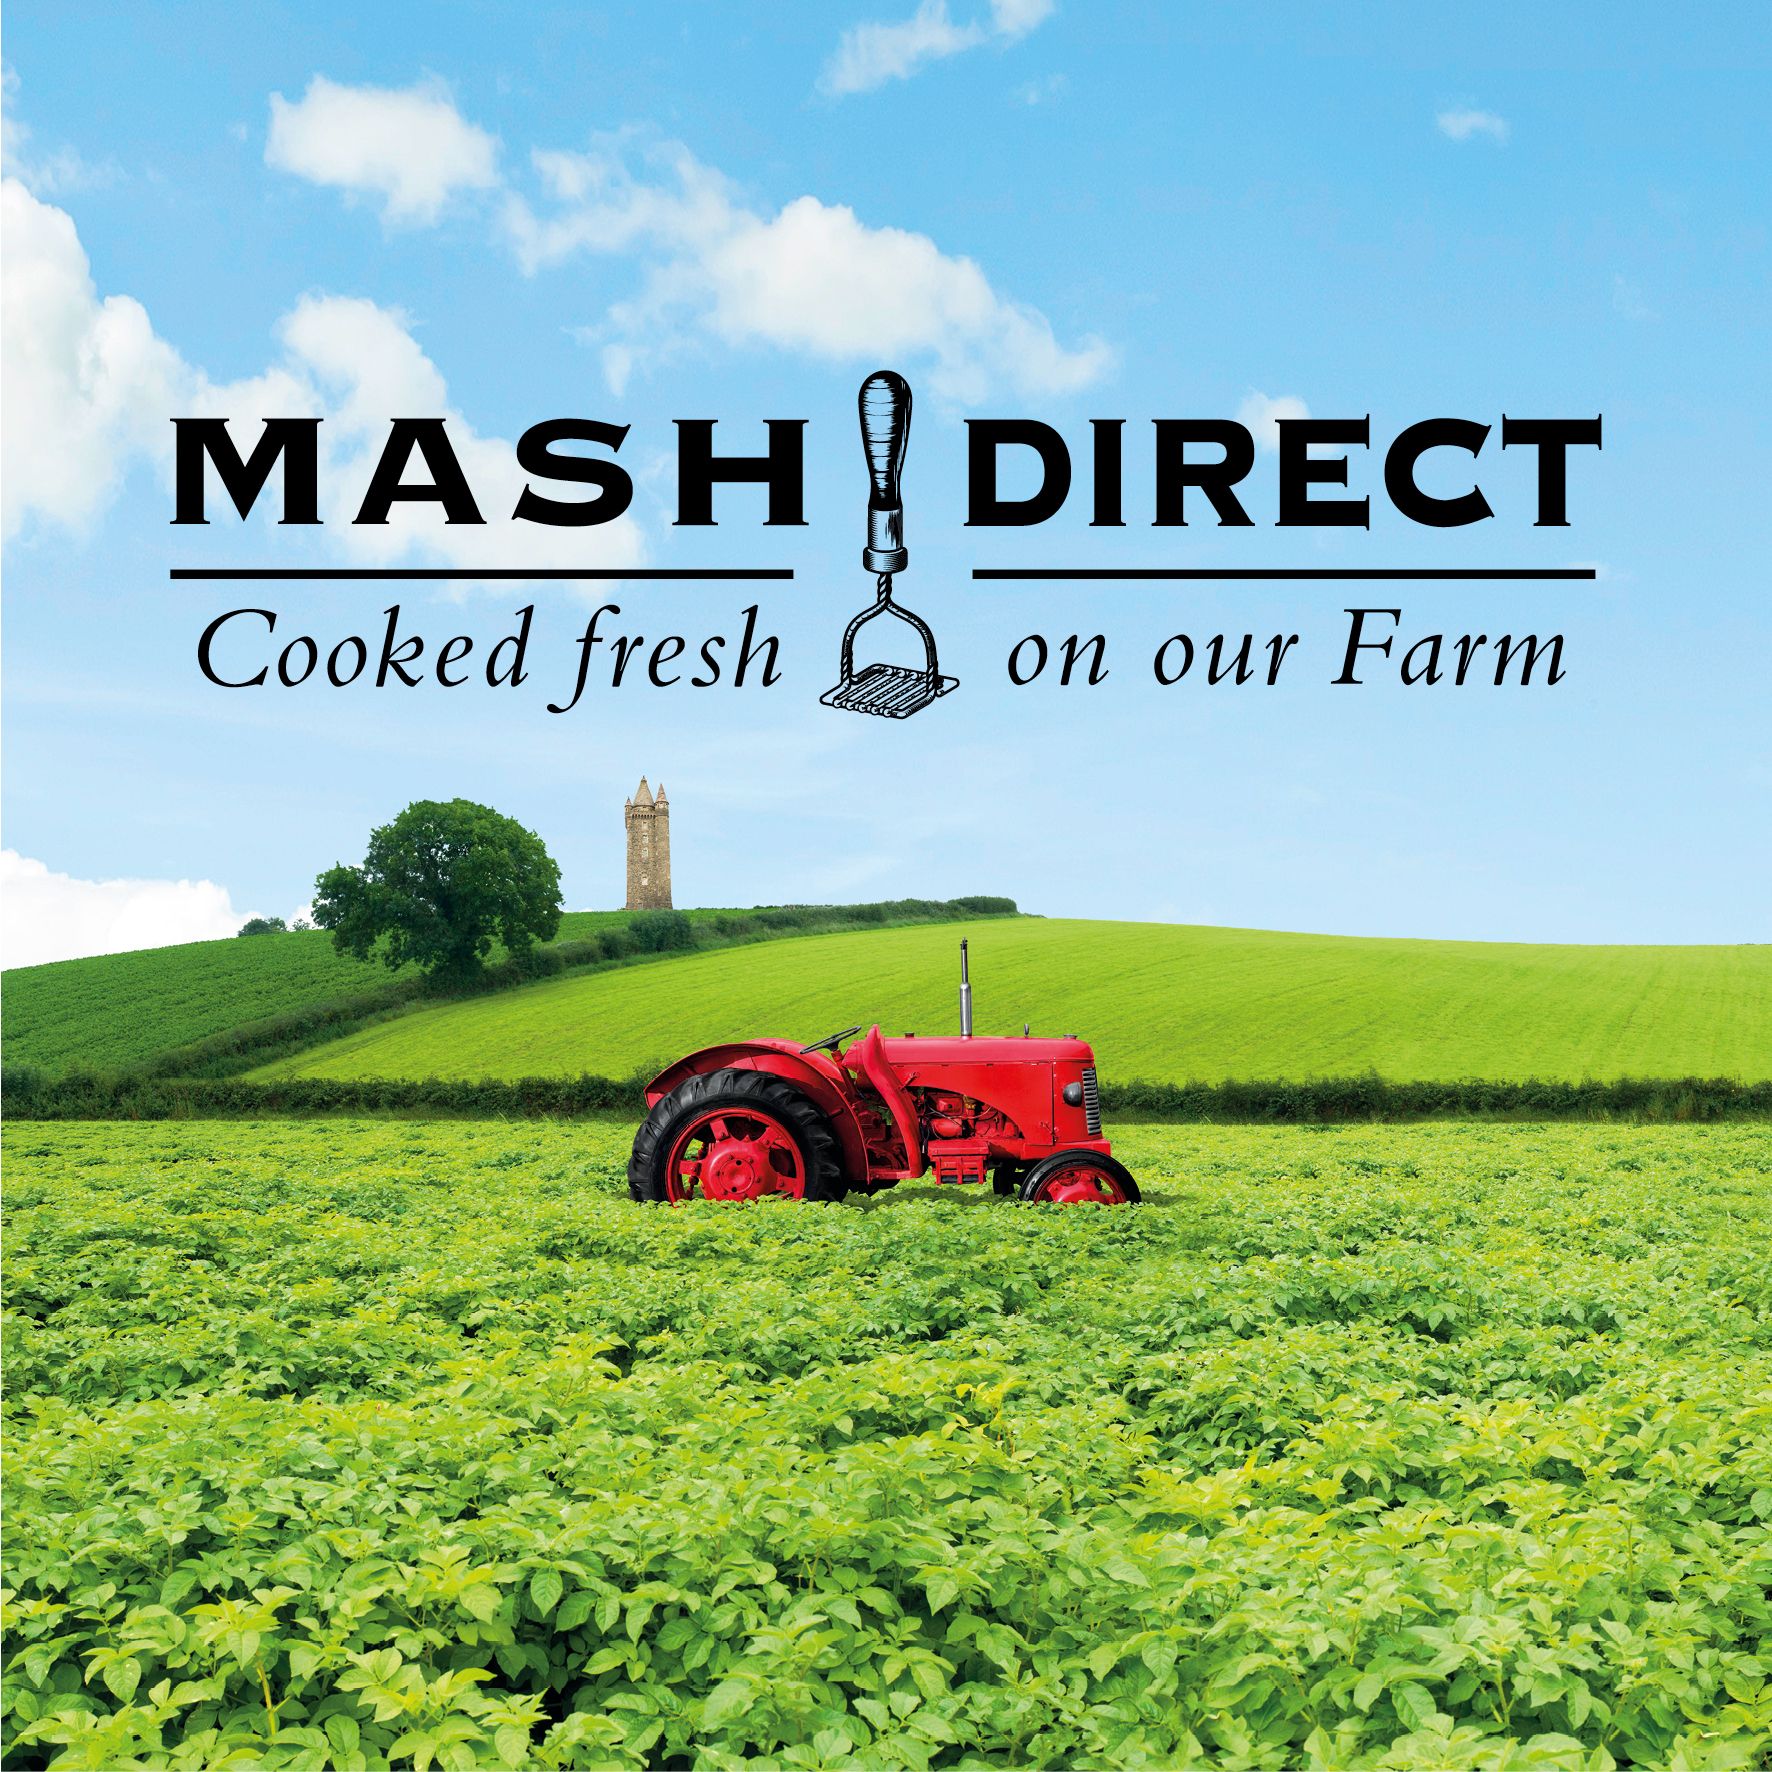 Mash Direct